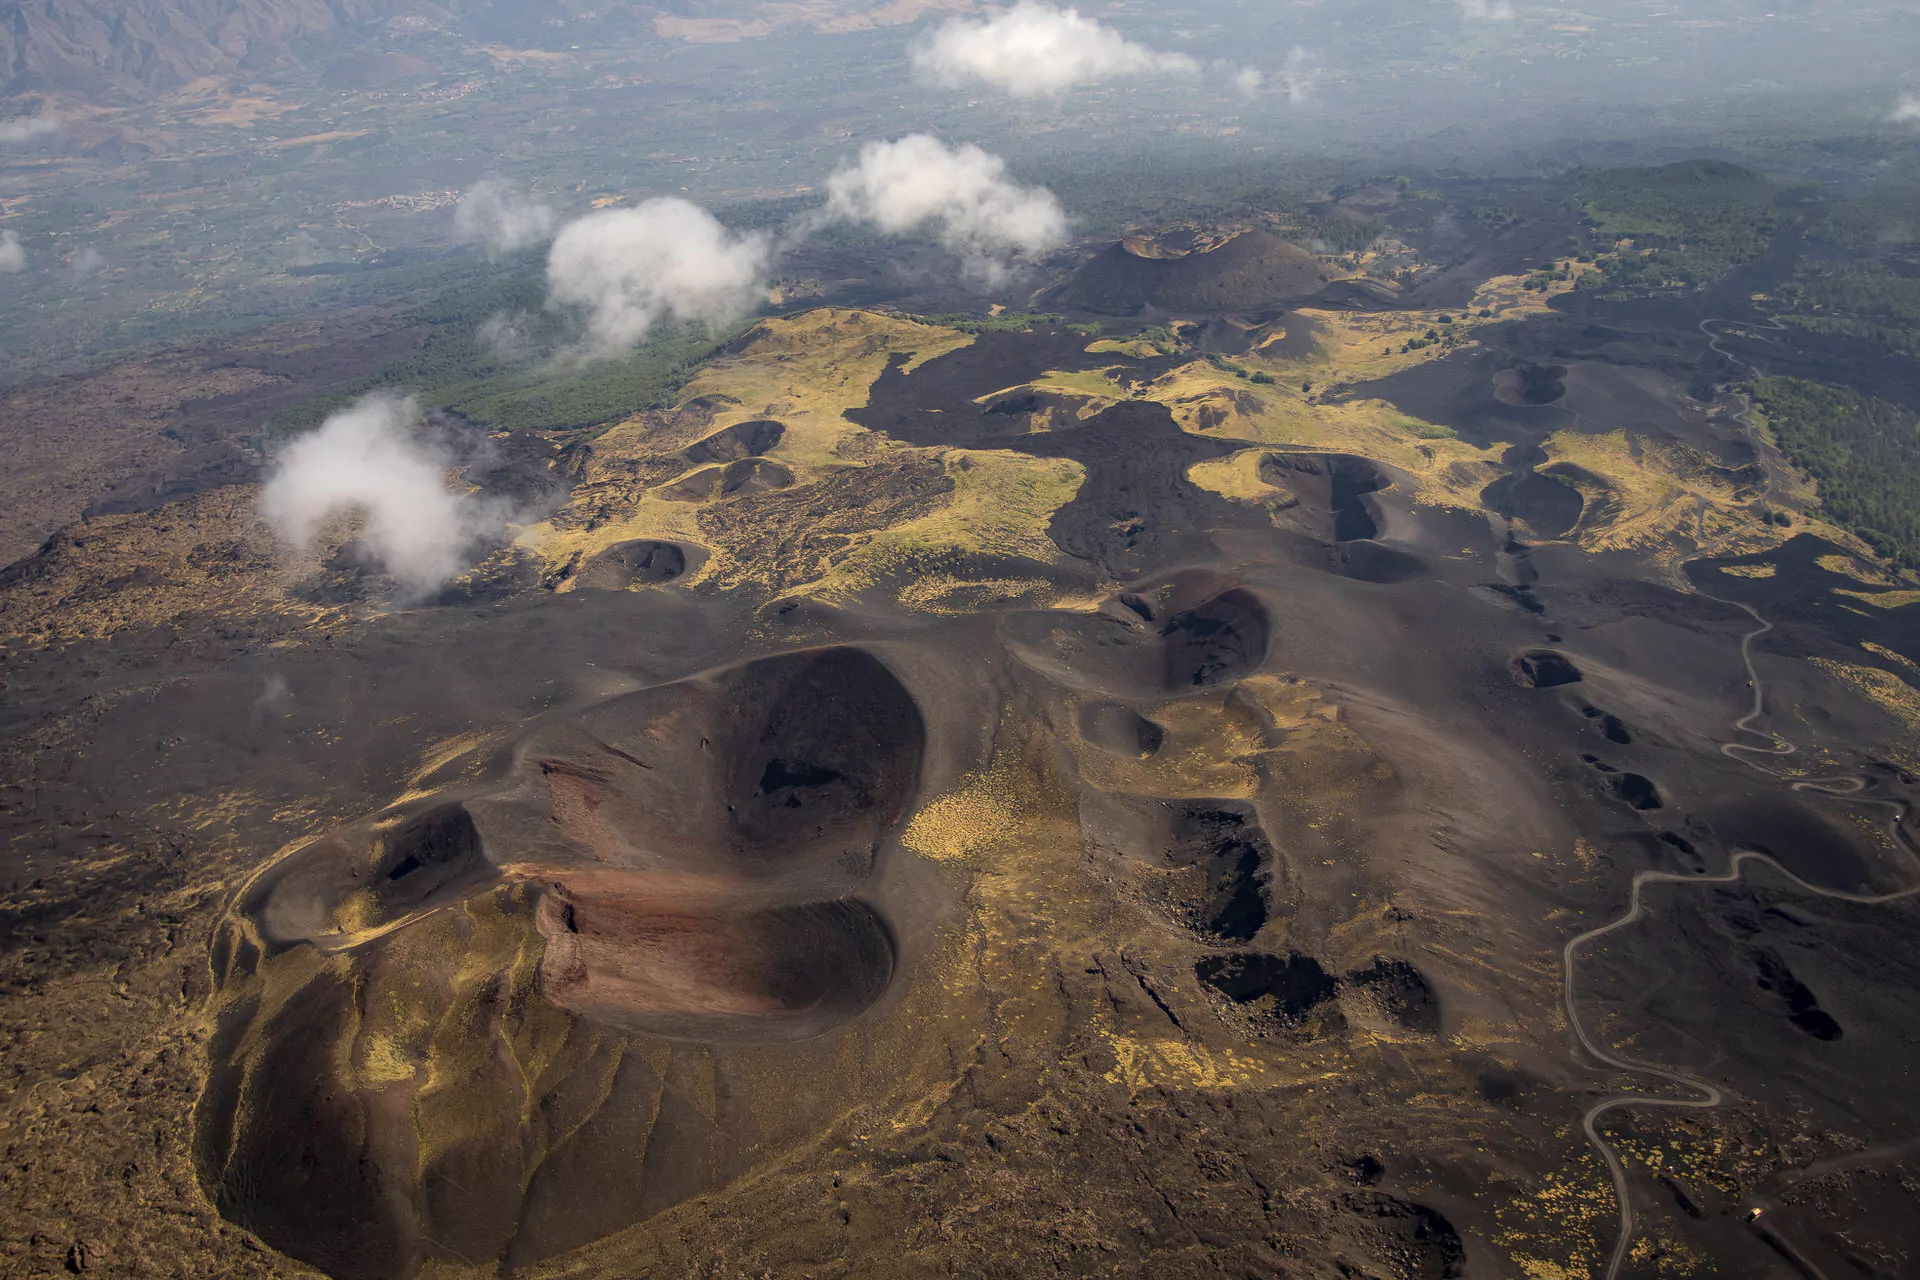 Molte eruzioni si formano lungo la spaccatura nord-orientale. Scopriamo le eruzioni del 1911, del 1923 e del 2002 nel nostro tour del Cratere Etna Nord.